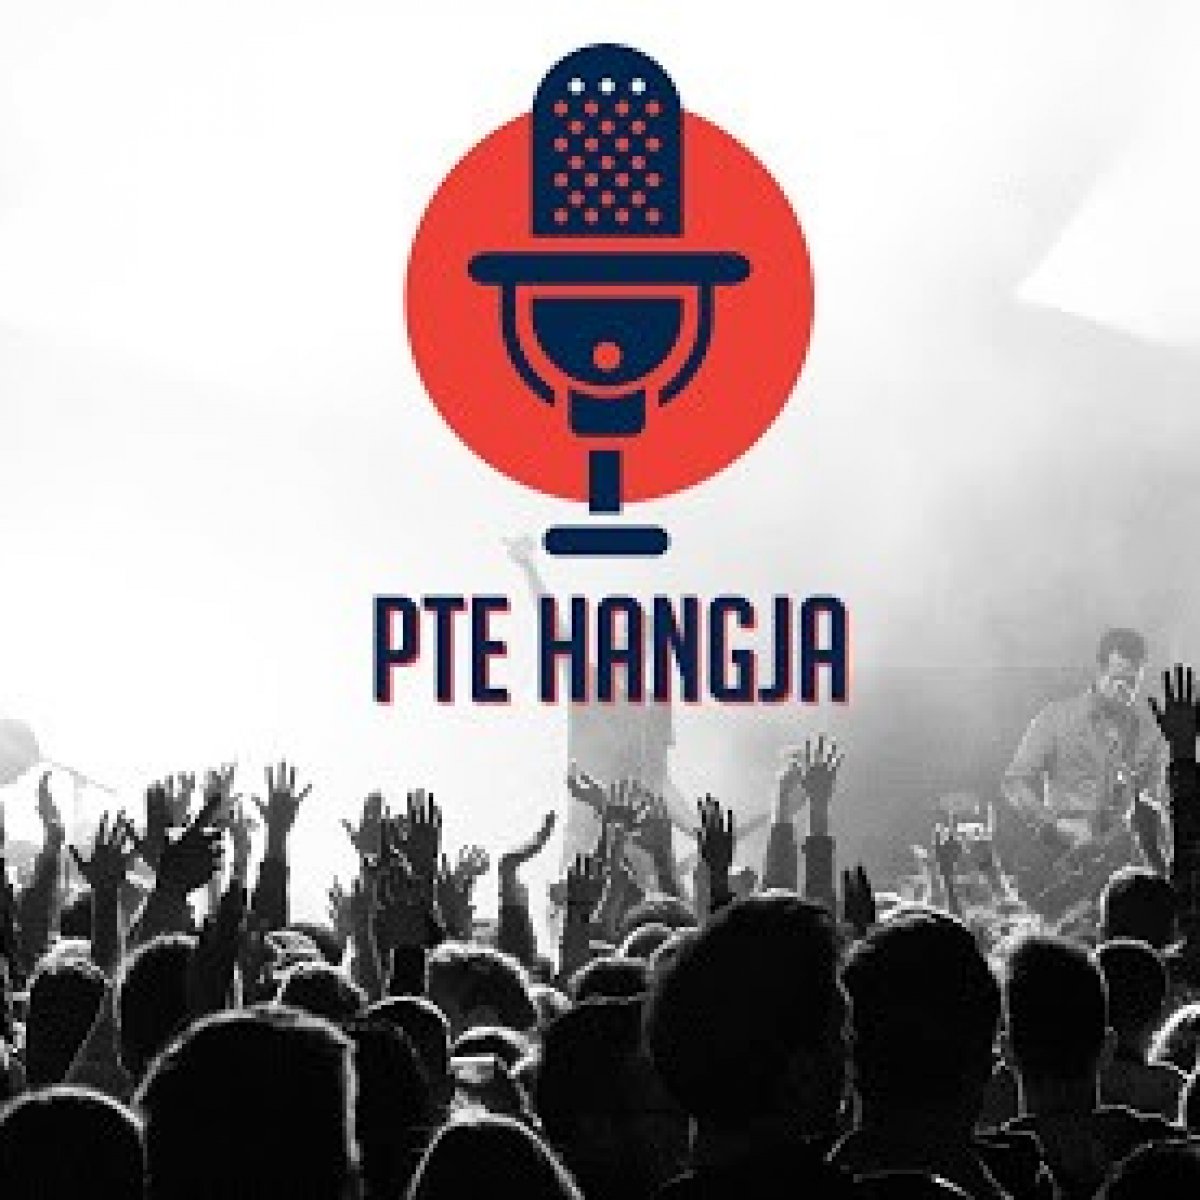 PTE Hangja 2019 döntő - Teljes műsor